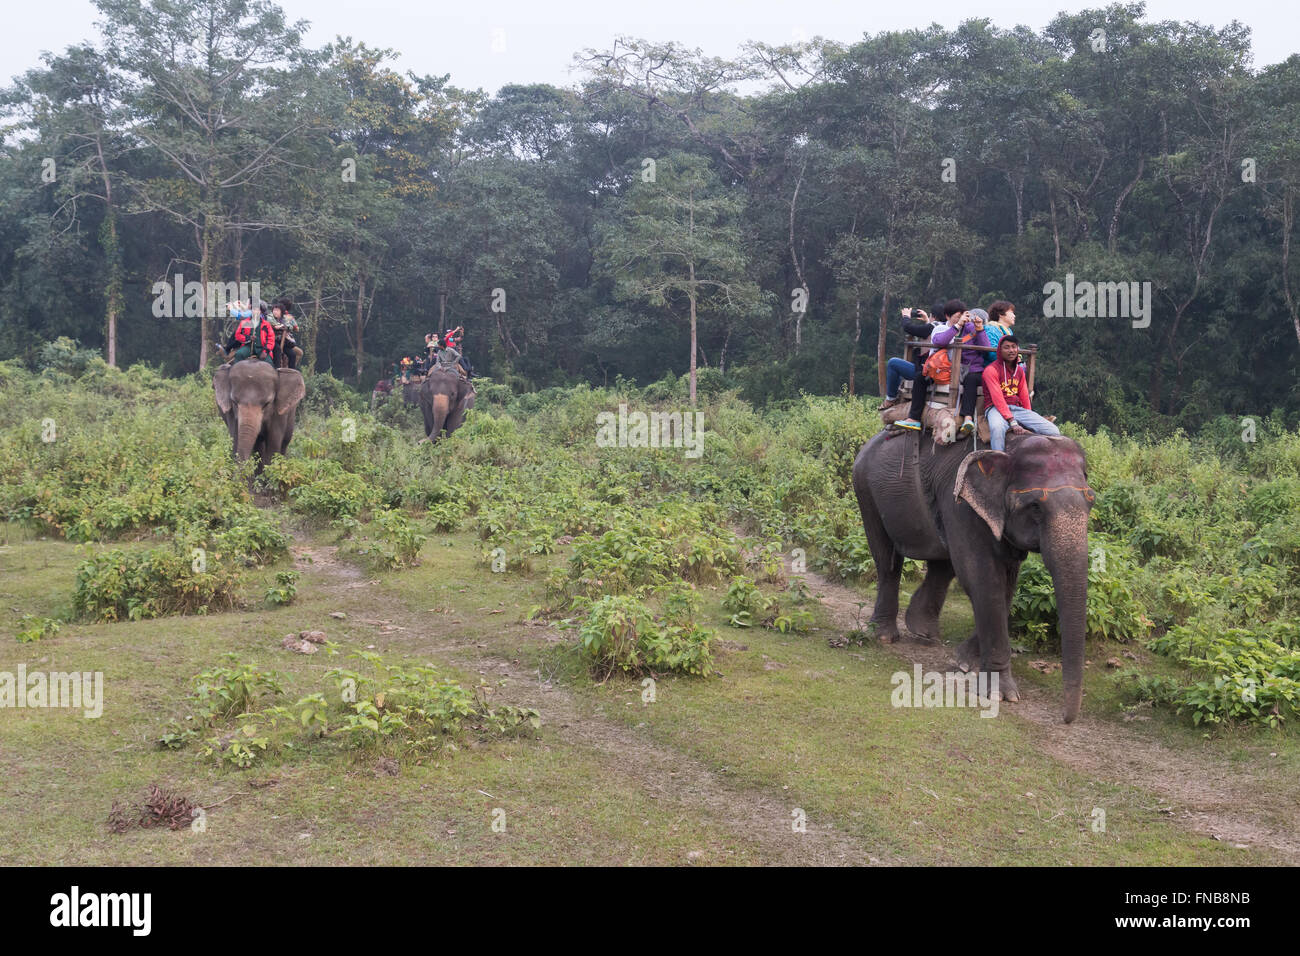 El Parque Nacional de Chitwan, Nepal - Noviembre 30, 2014: Los turistas en un paseo en elefante. Foto de stock